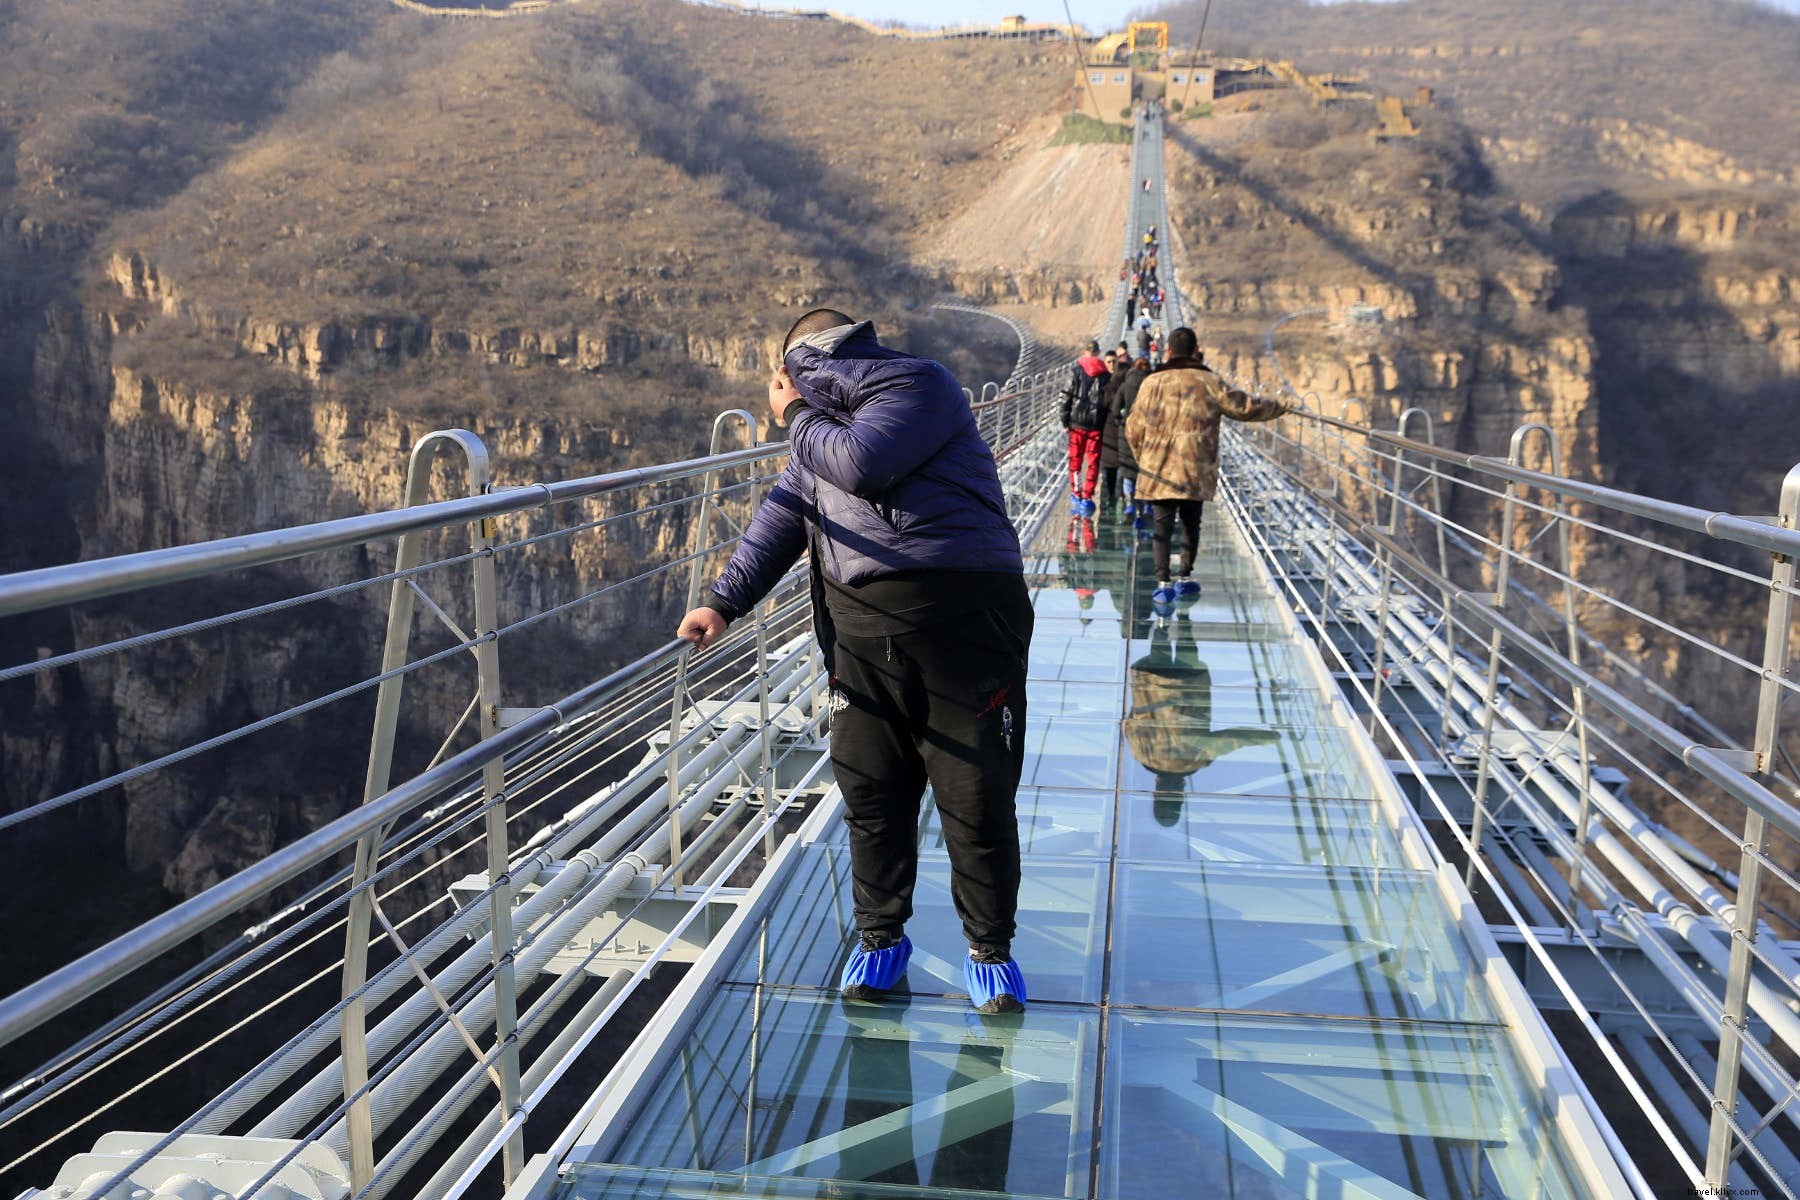 Desafie a gravidade na nova ponte de vidro recorde da China 